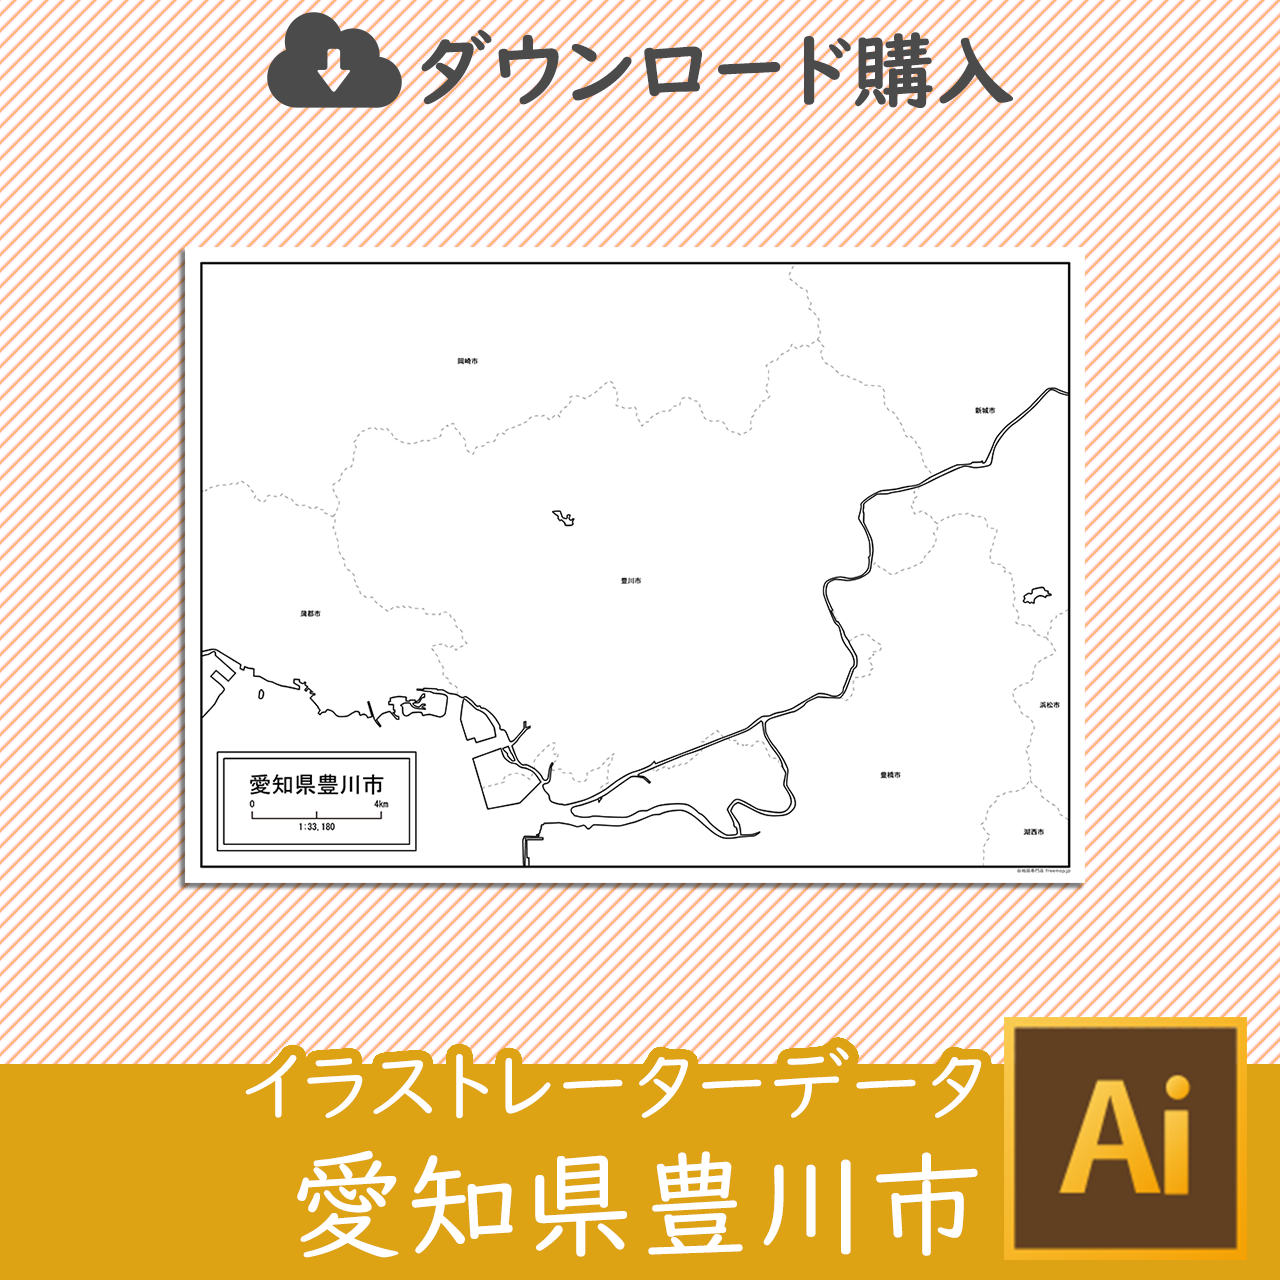 豊川市のaiデータのサムネイル画像